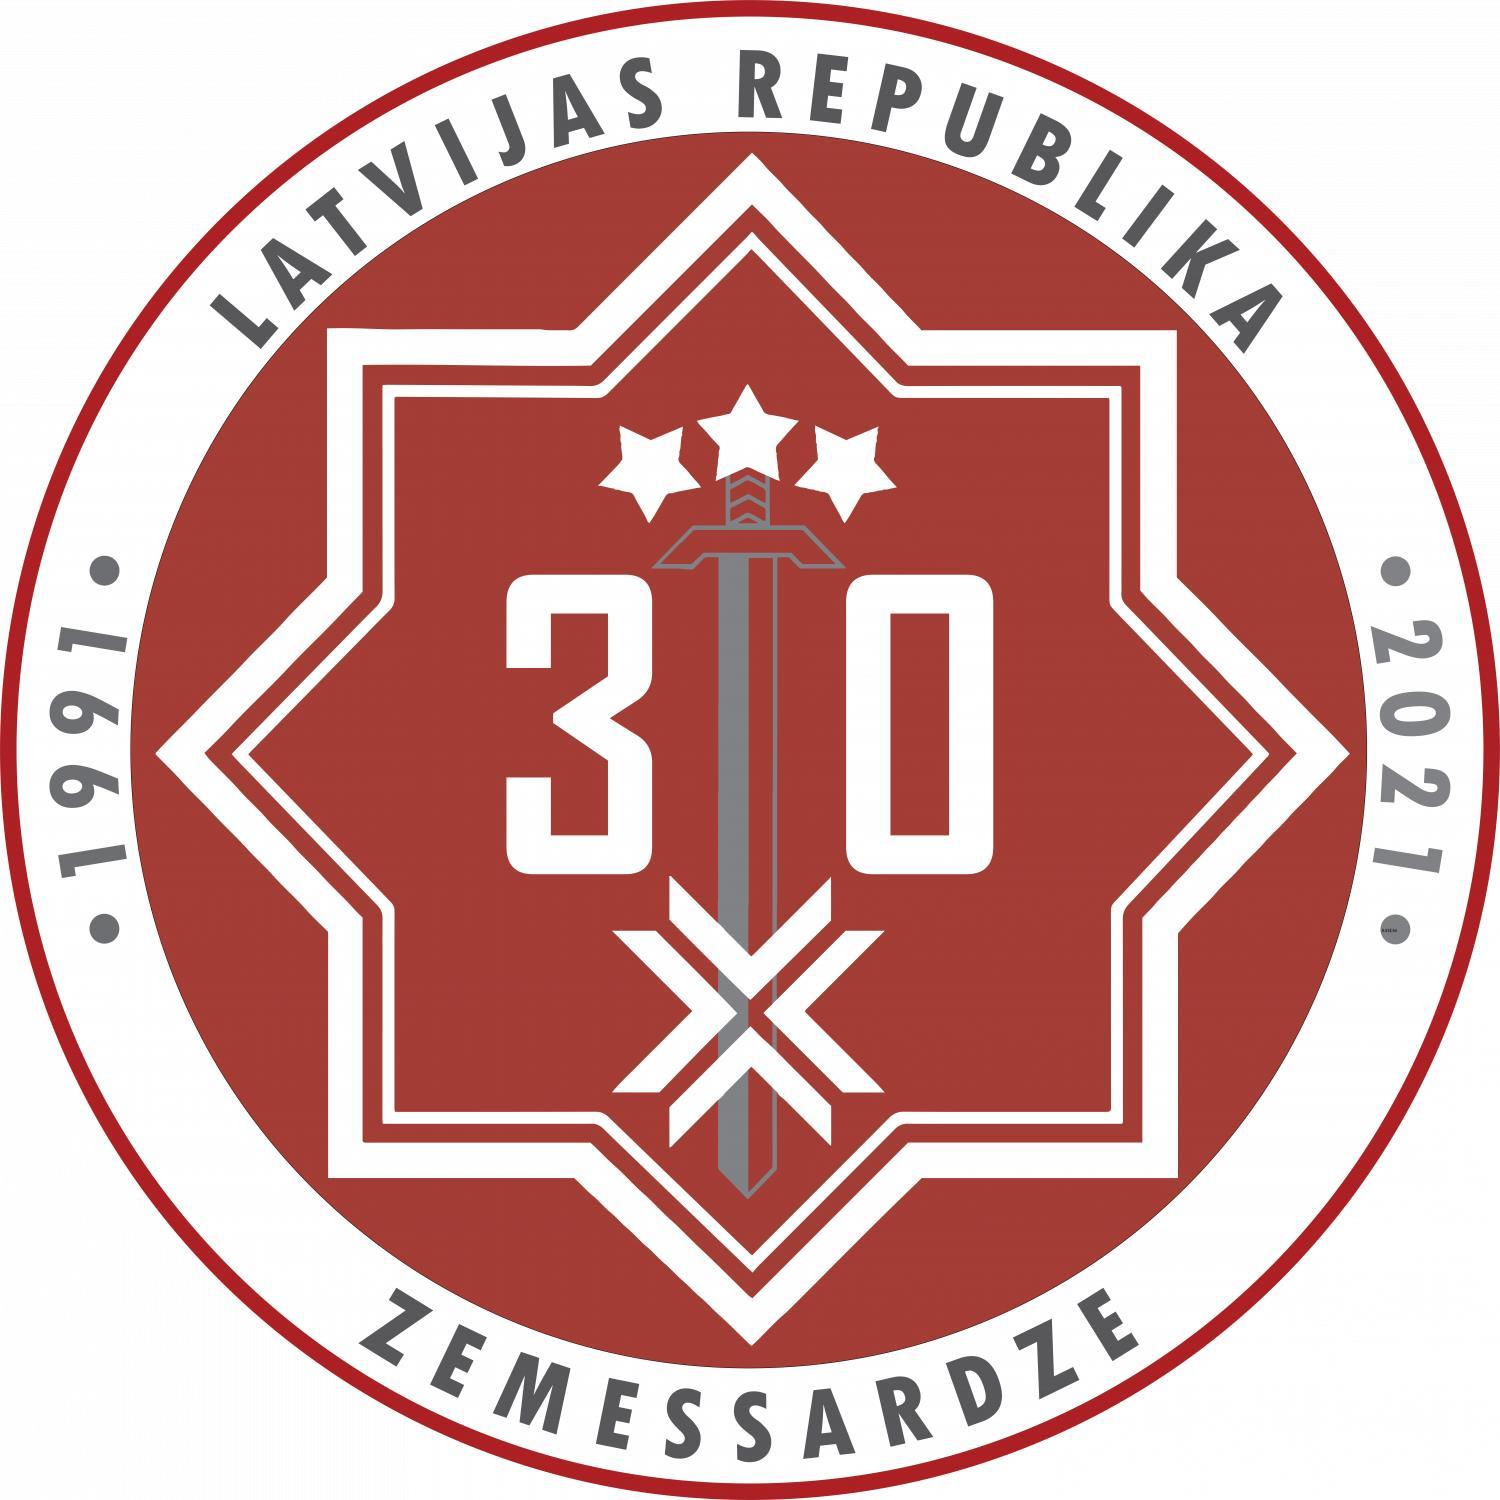 Zemessardzes 30. gadadienas svinības notiks Jelgavā 